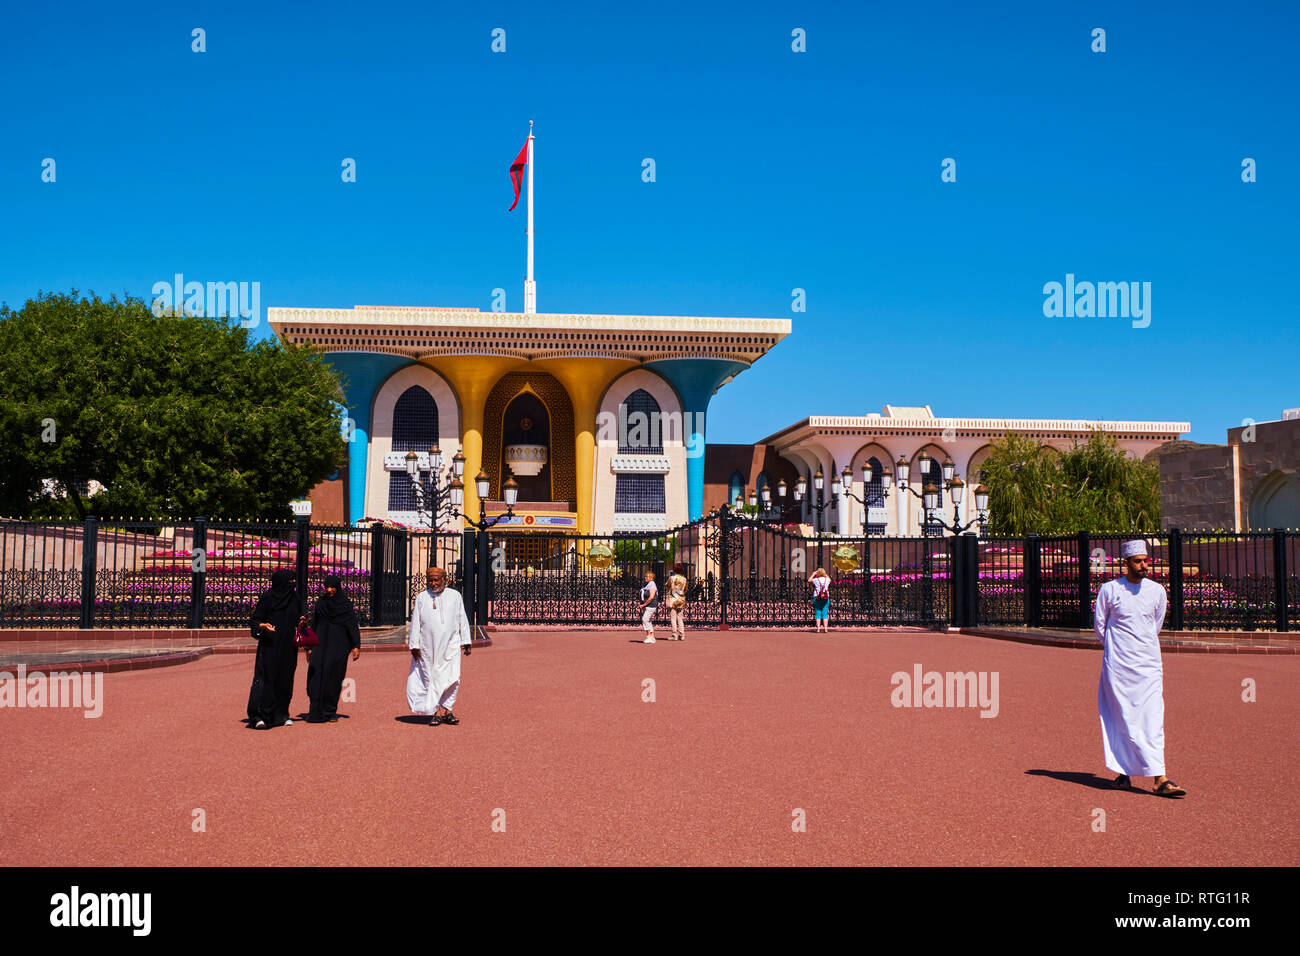 Sultanat von Oman, Muscat, Al Alam Palast des Sultans Qaboos Stockfoto